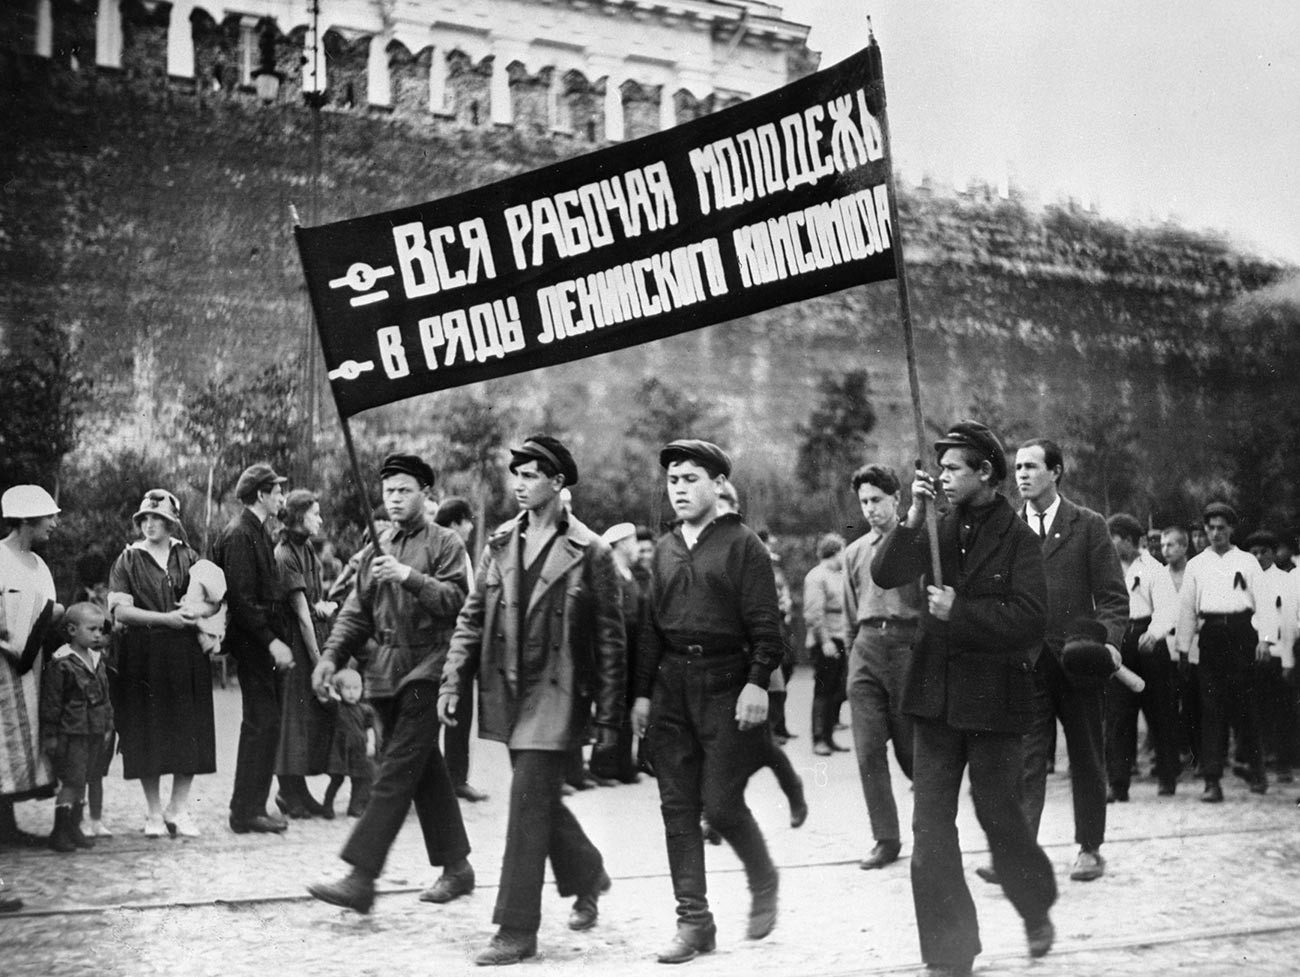 Anggota muda Komsomol di Lapangan Merah.